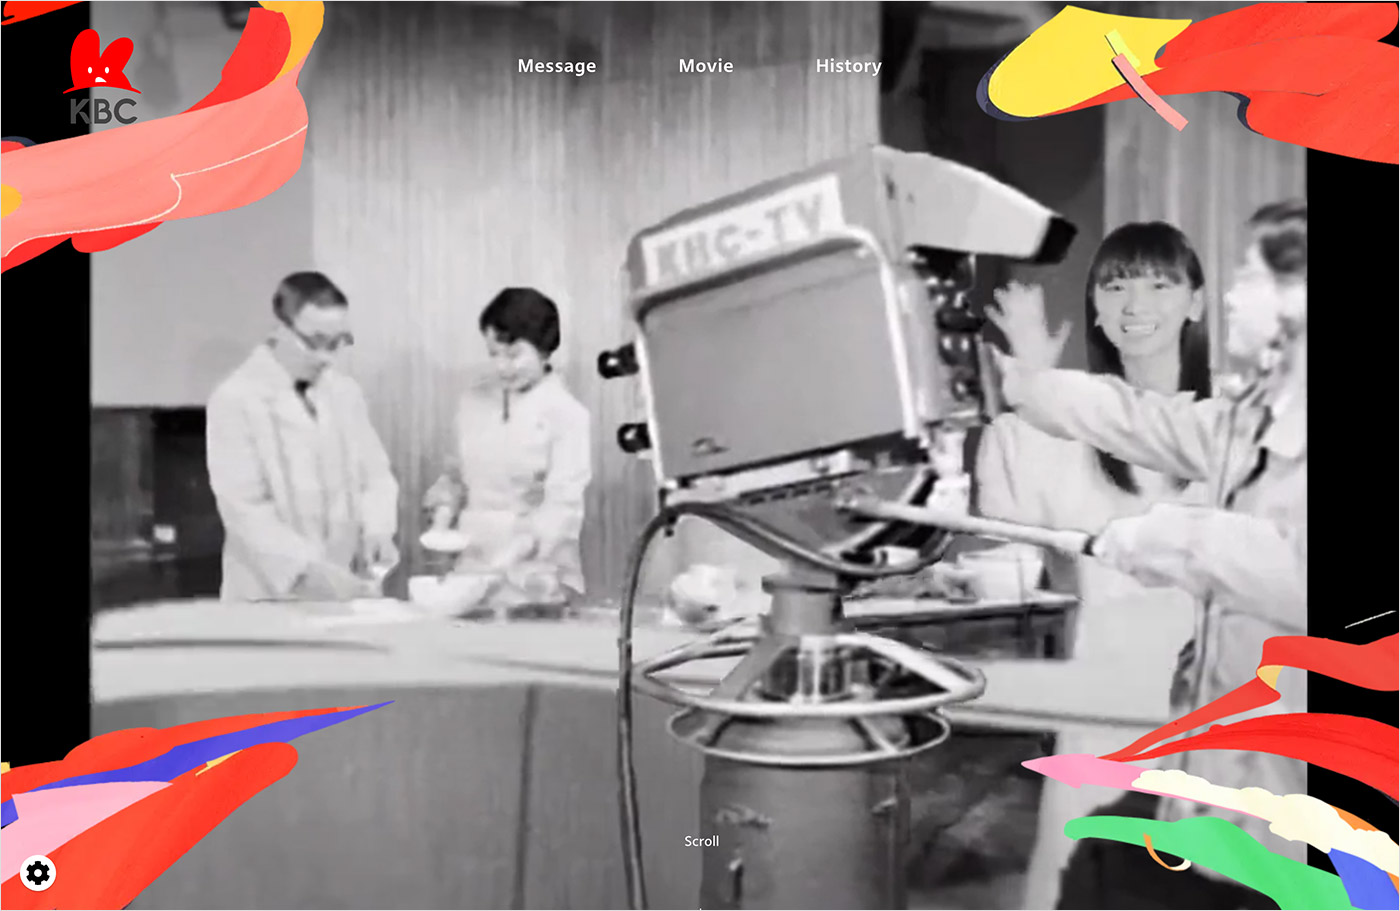 KBC創立70周年｜あしたを、もっとユニークに。ウェブサイトの画面キャプチャ画像